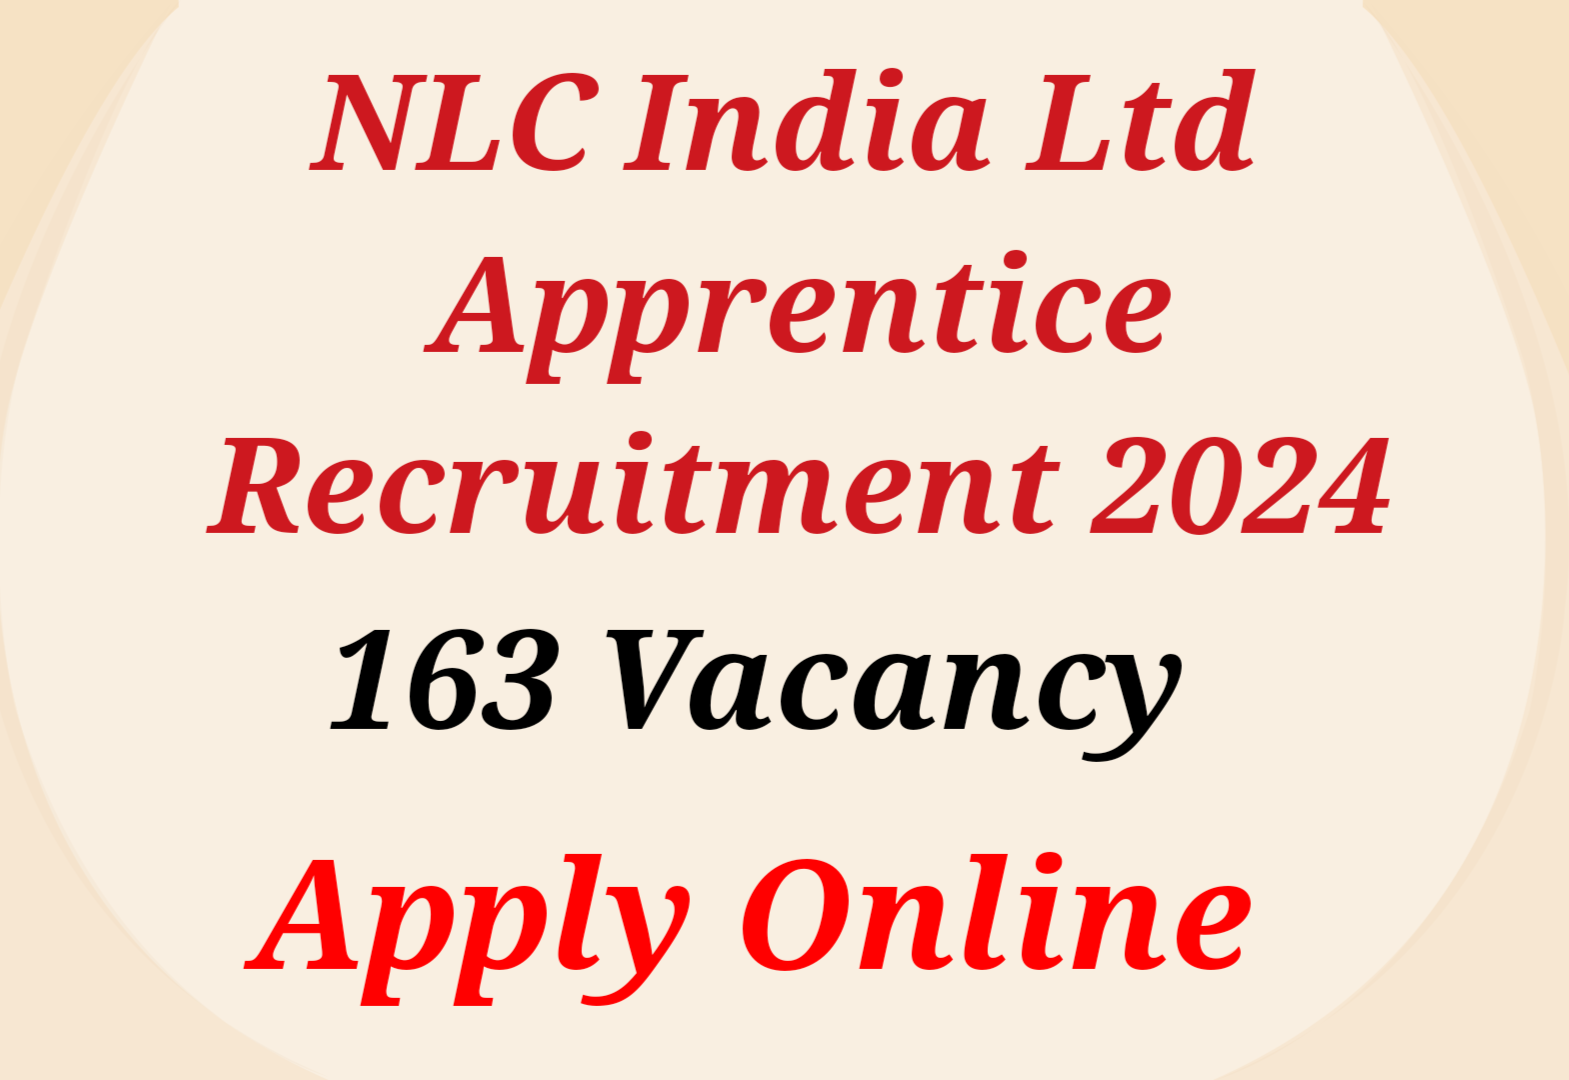 NLC India Ltd Apprentice Recruitment 2024